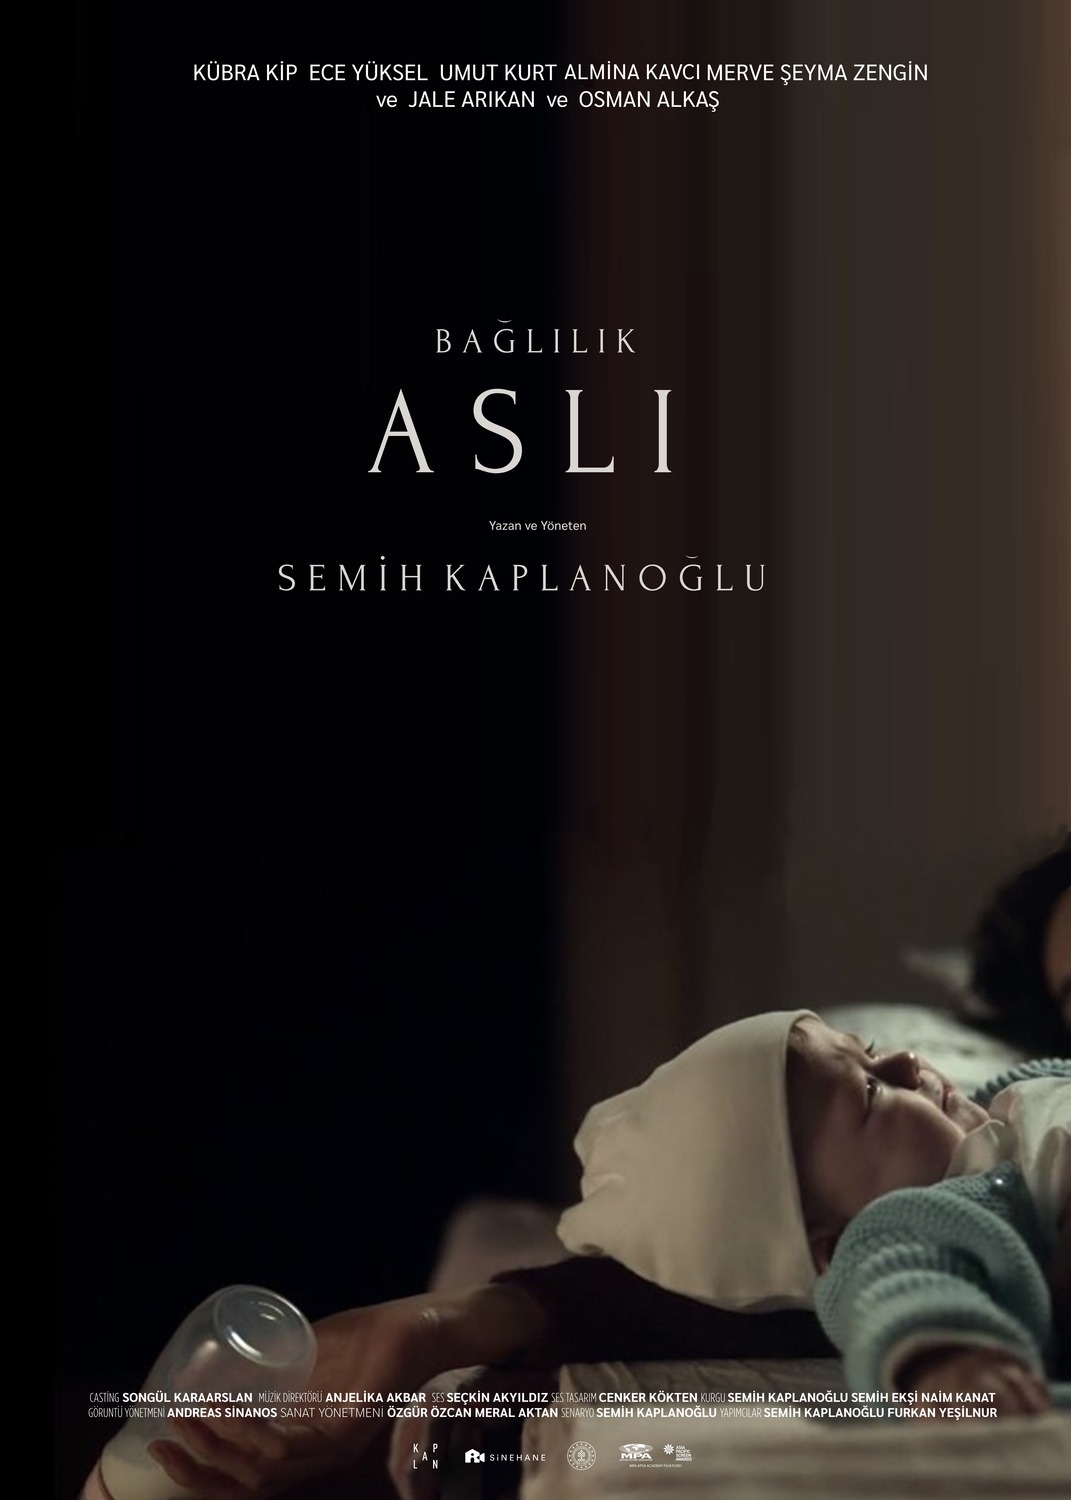 Extra Large Movie Poster Image for Baglilik Asli 